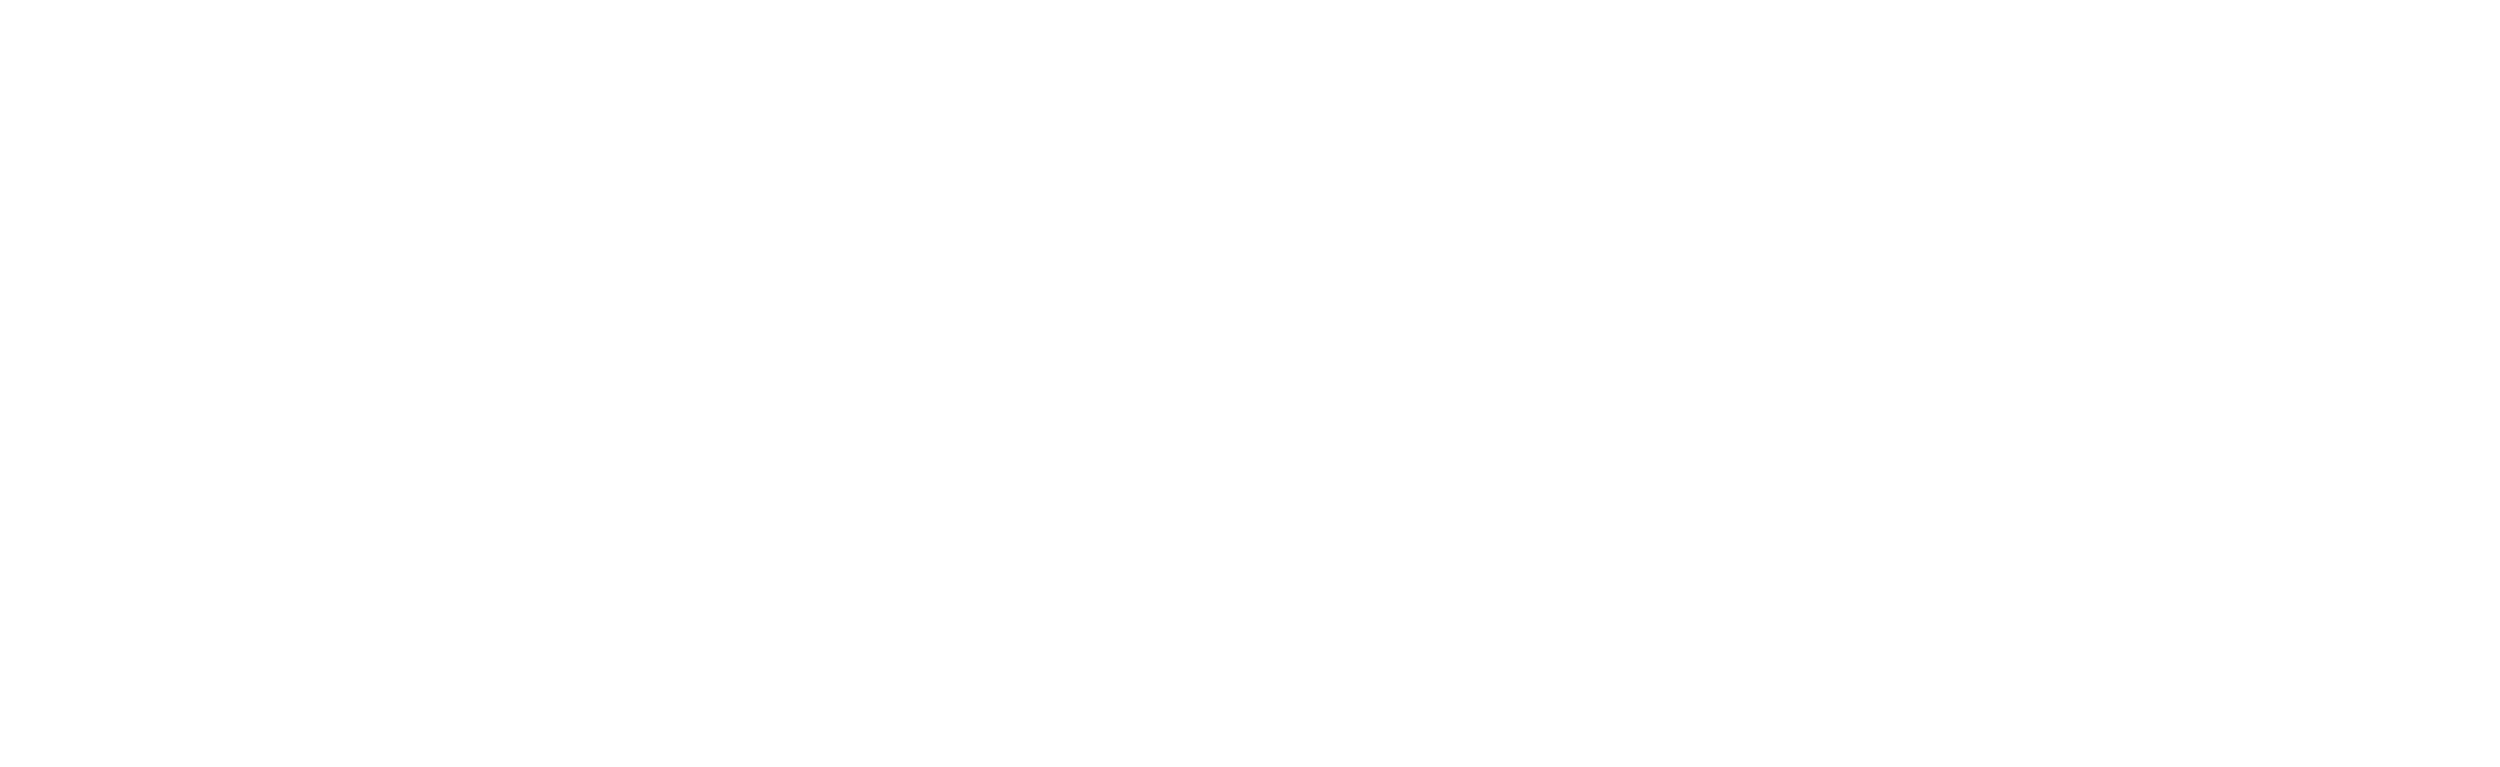 Feel Good Foods Catering  Organic Catering in Santa Cruz County +